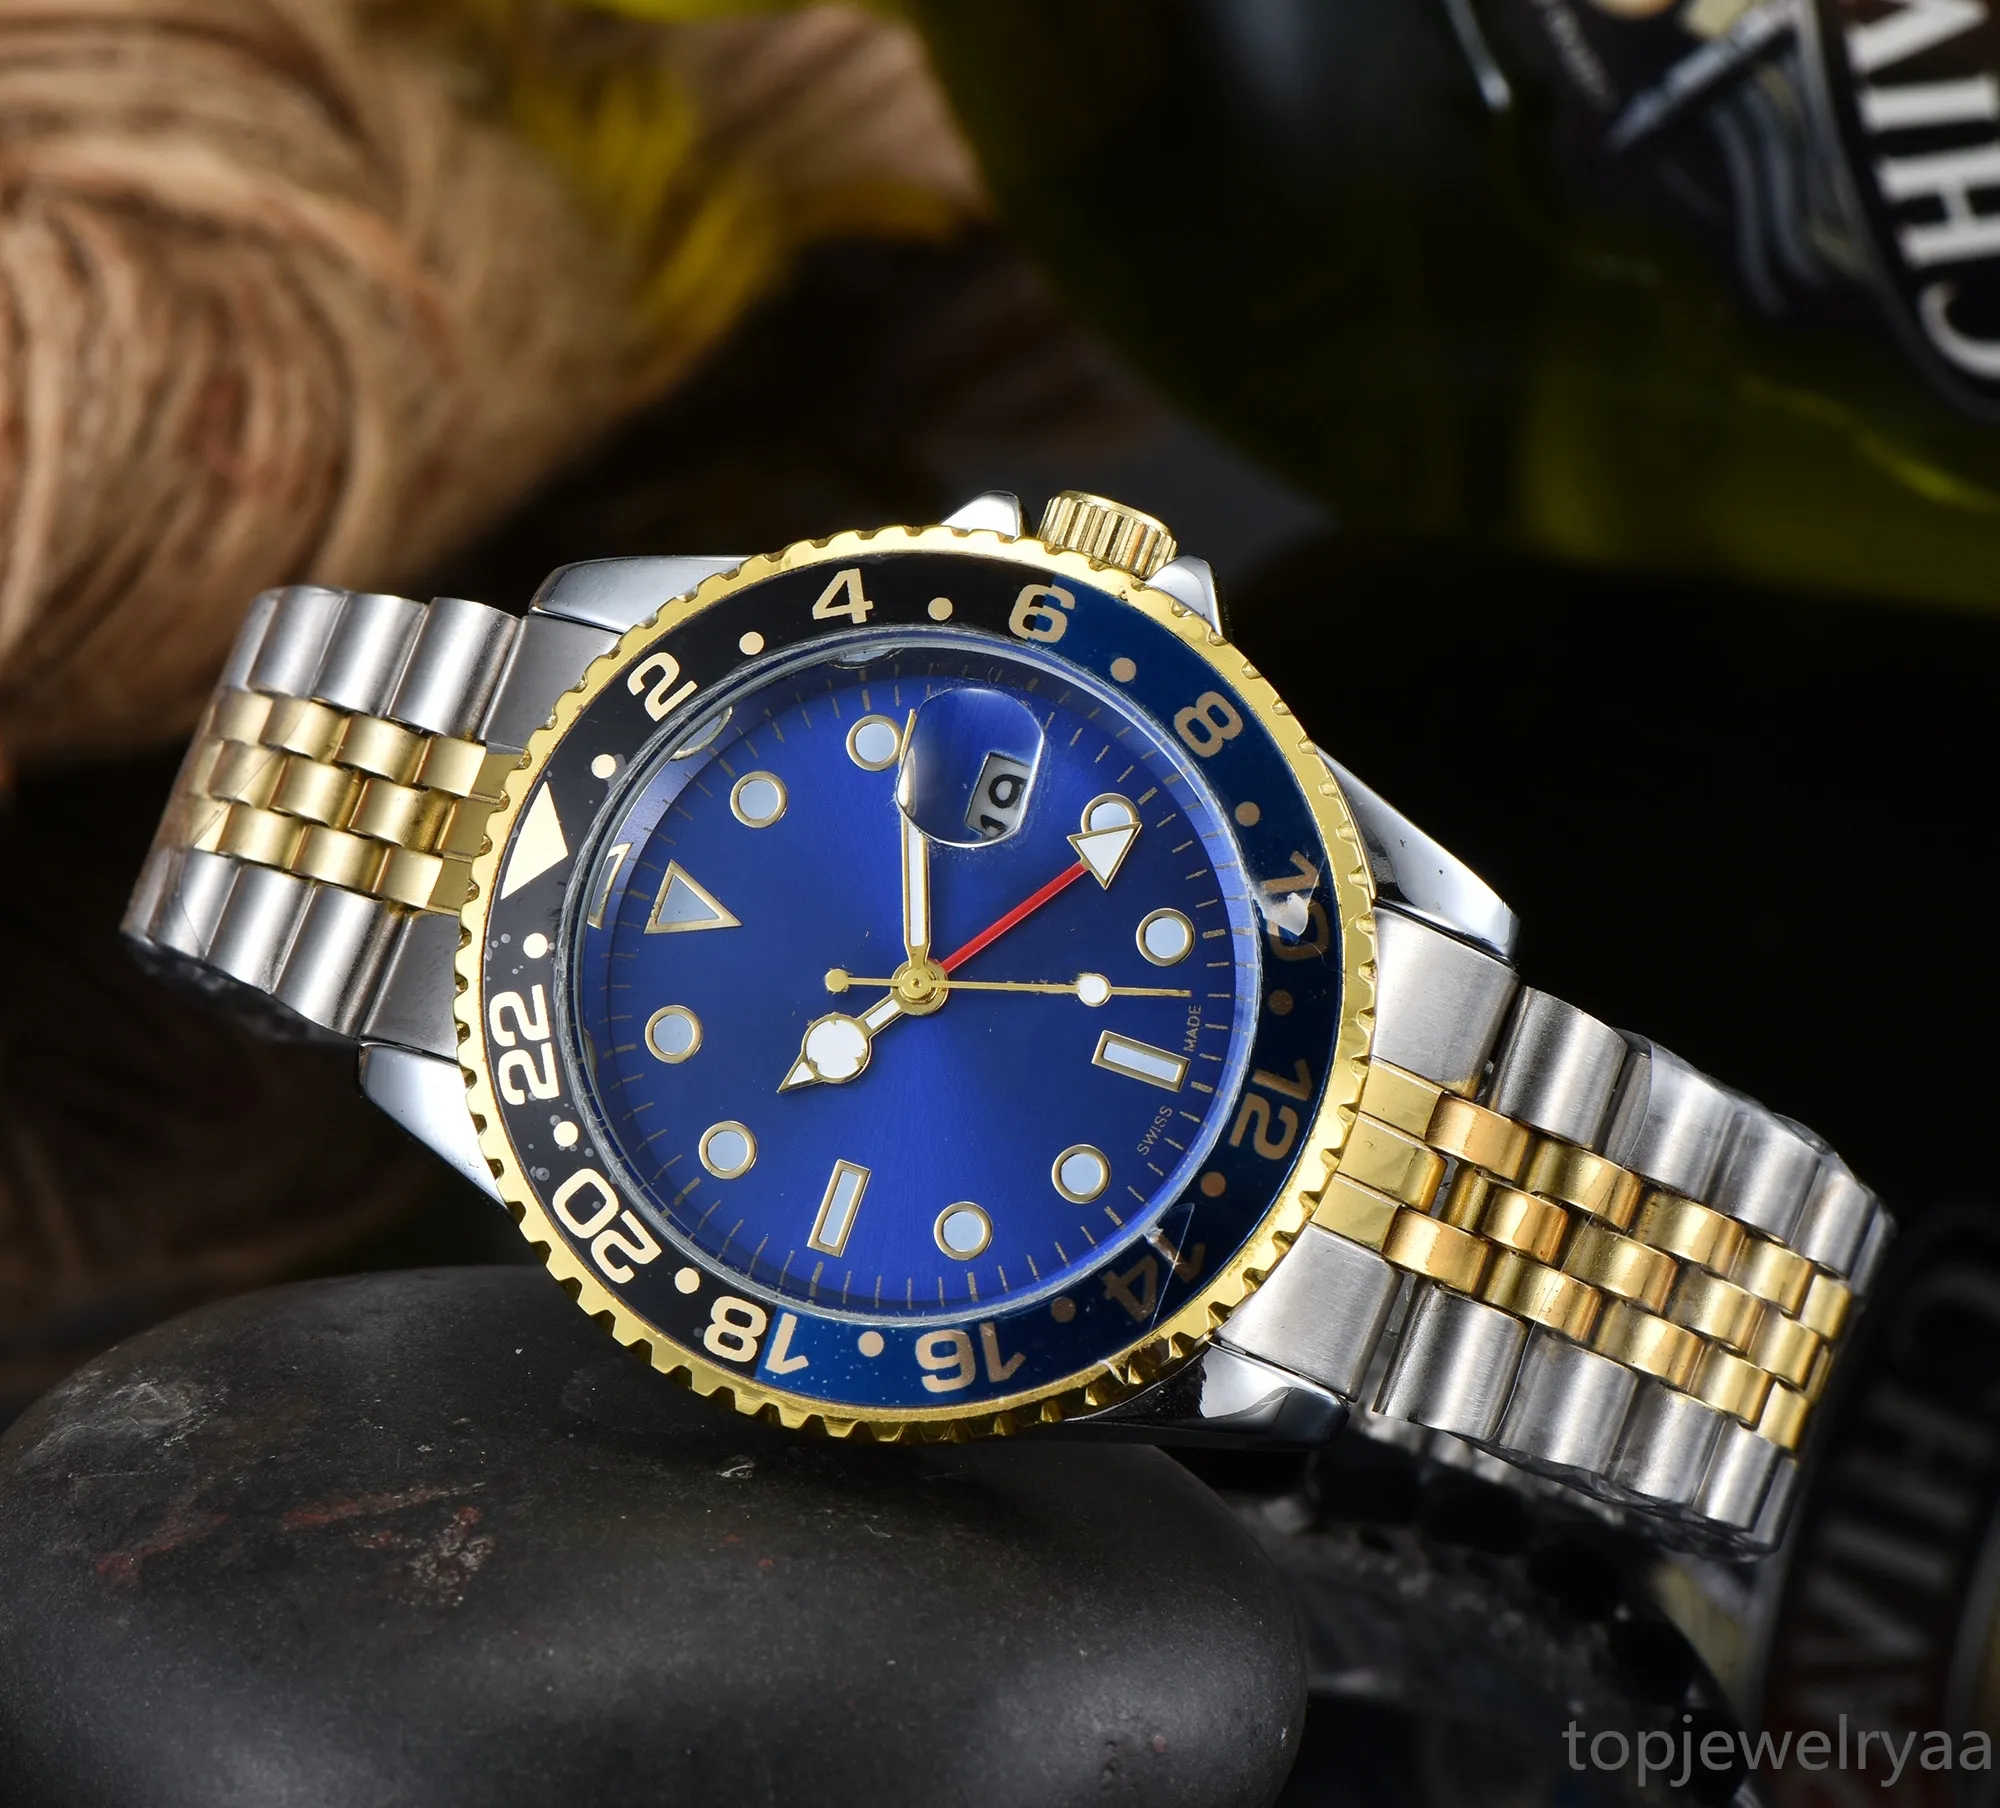 Zegarek męski męski zegarek trzy pin kwarcowe Watch Wysokiej jakości najlepsza luksusowa marka kalendarz zegar